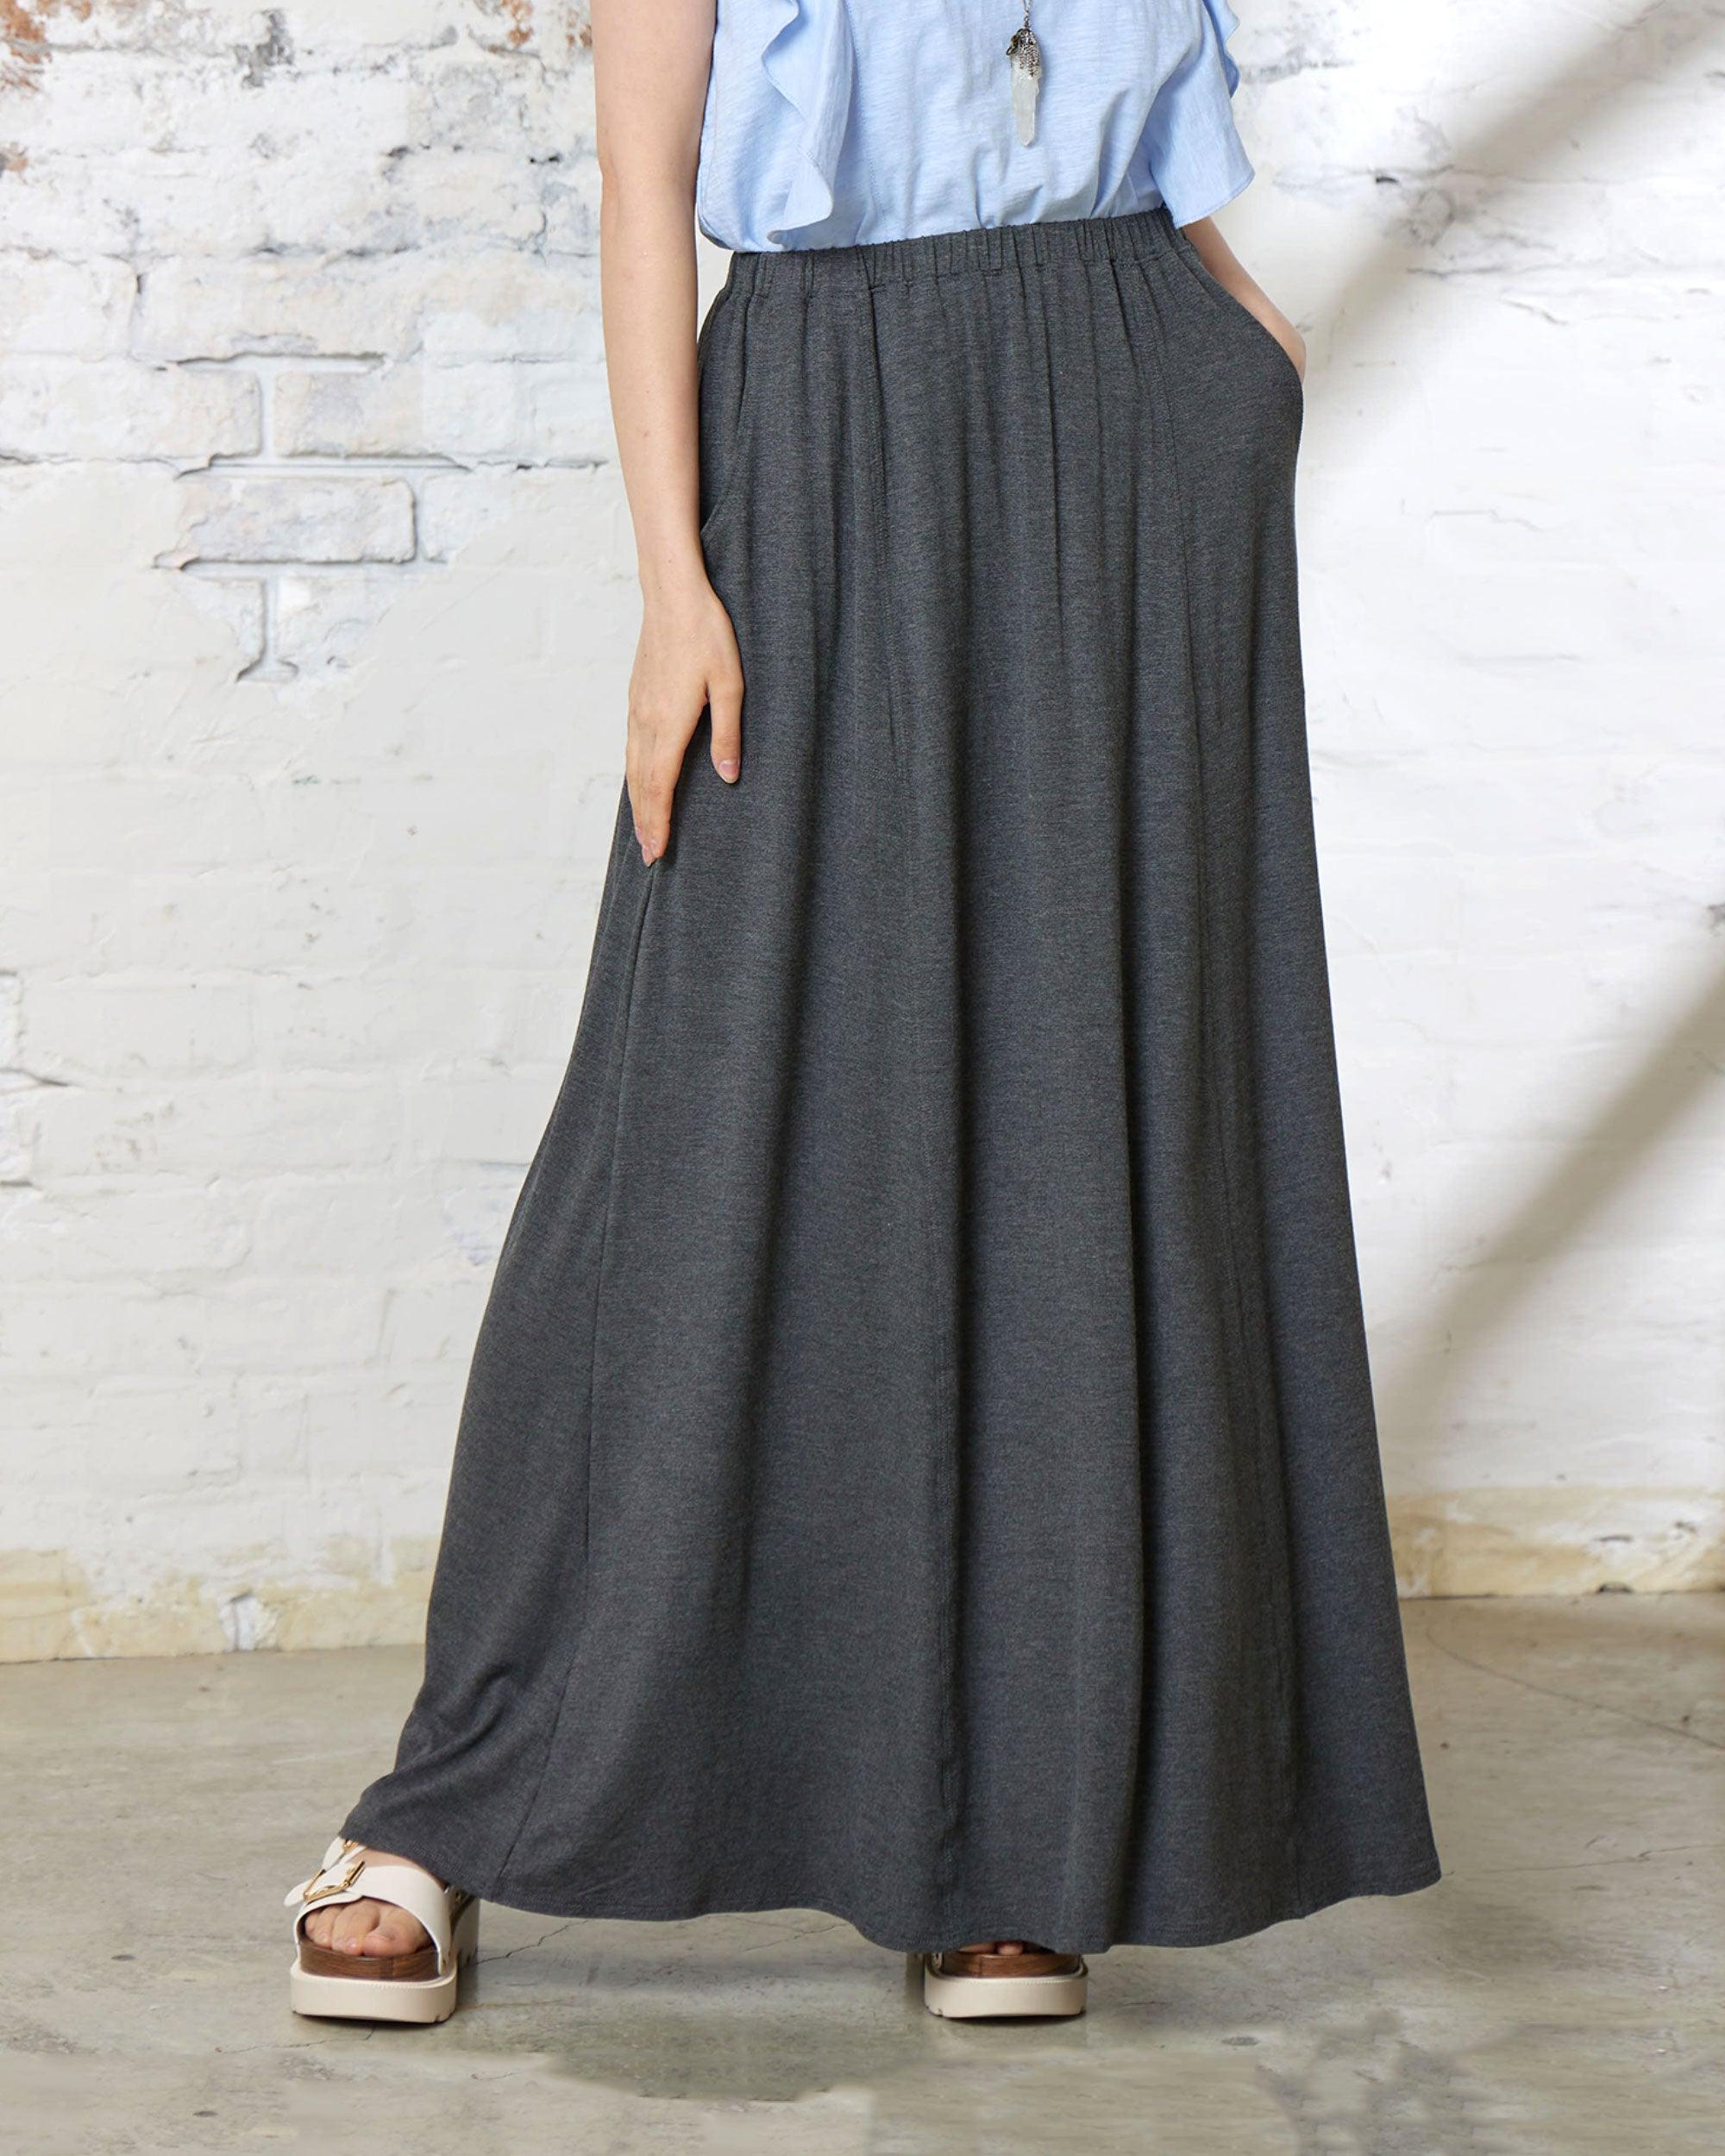 Soft Lightweight Flowy Maxi Skirt - 2T Charcoal